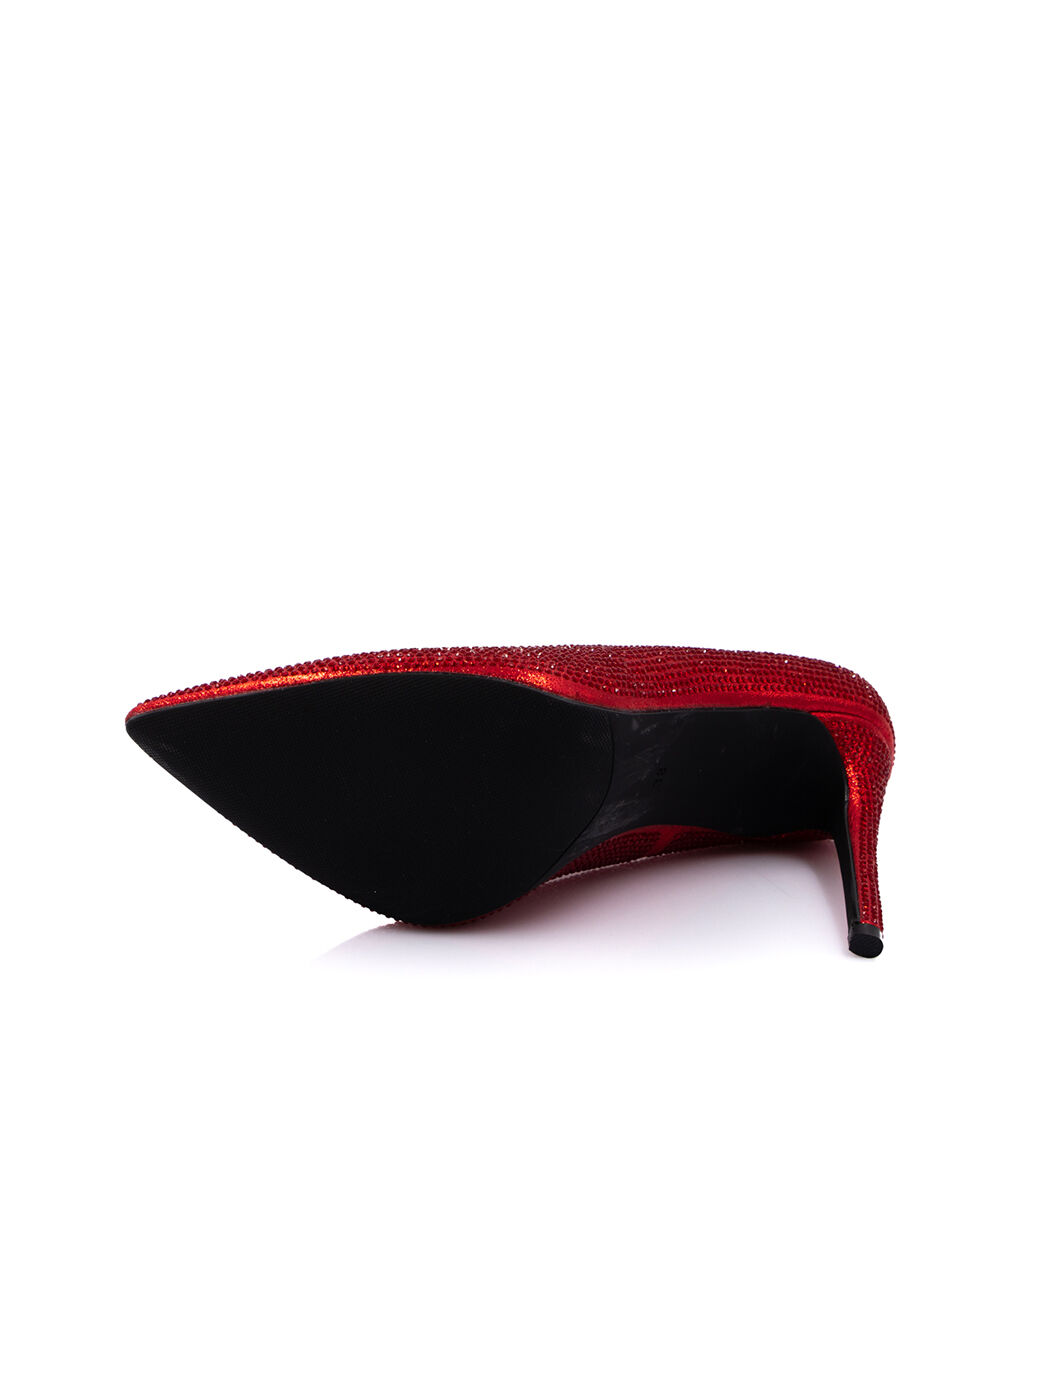 Туфли женские красные экокожа каблук шпилька демисезон 3M вид 2